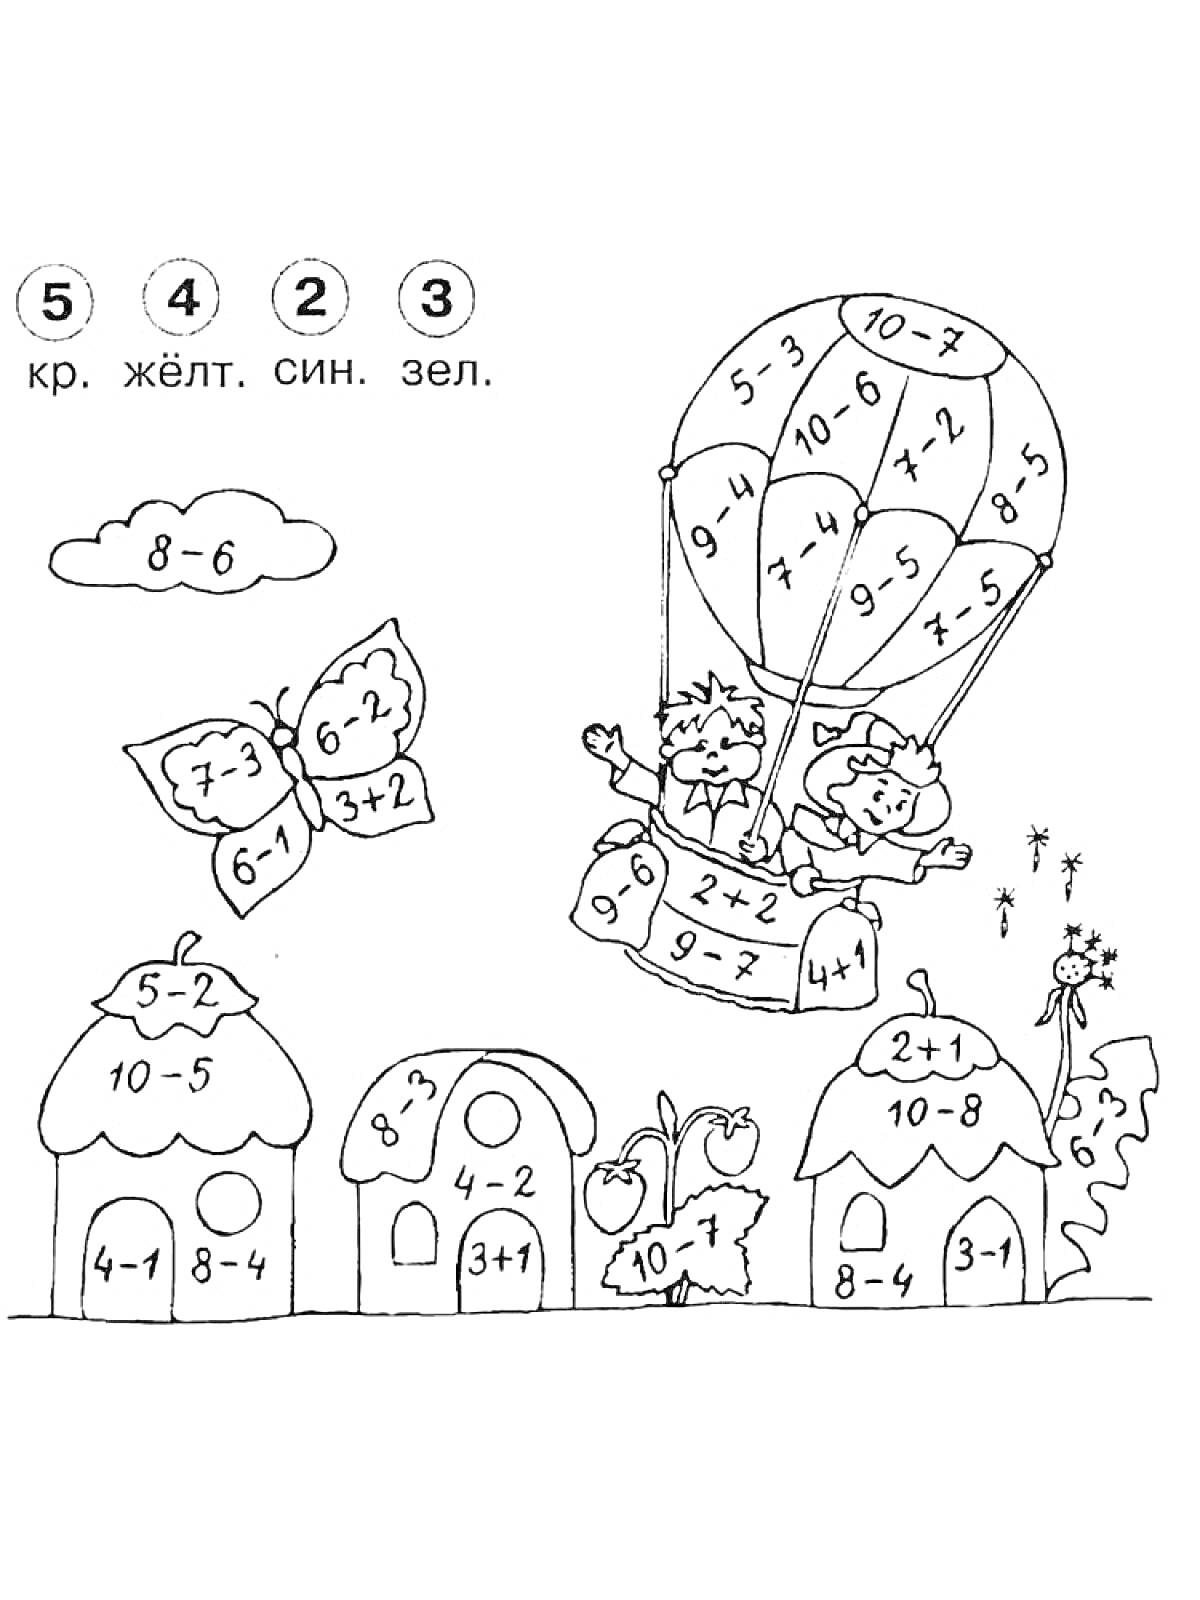 Раскраска Воздушный шар с детьми и домиками с примерами